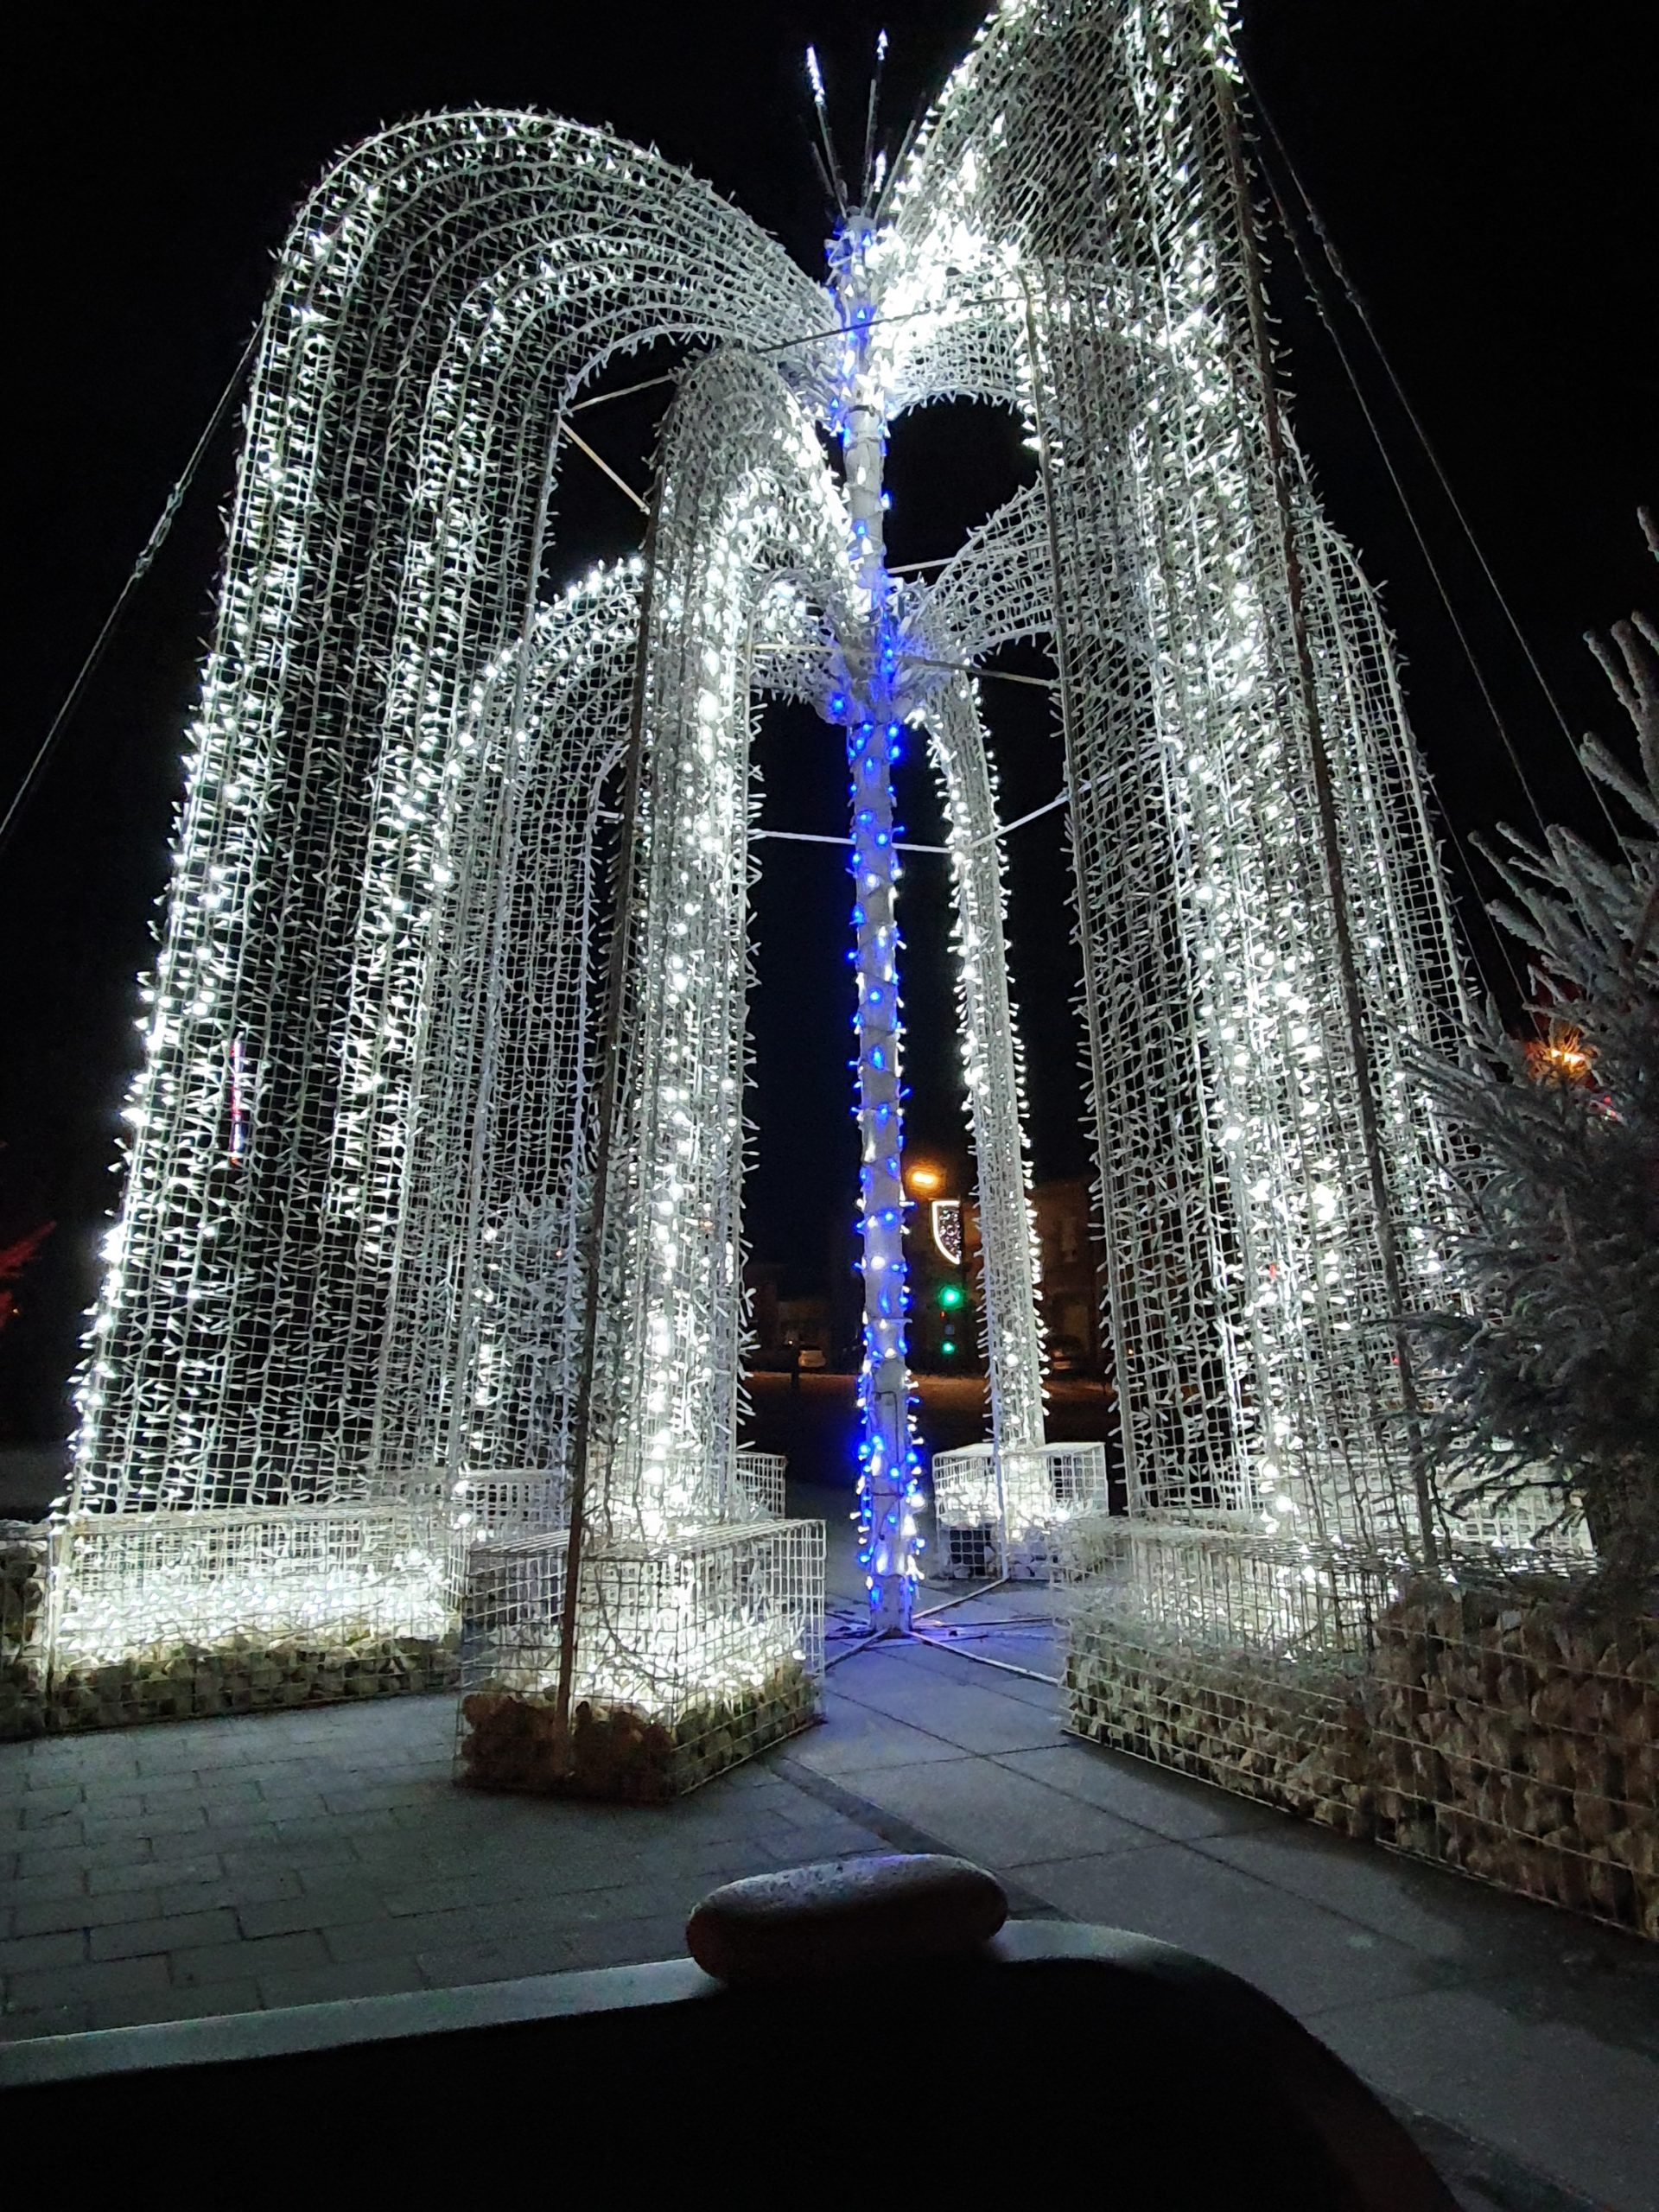 La magnifique fontaine de lumière à Liévin